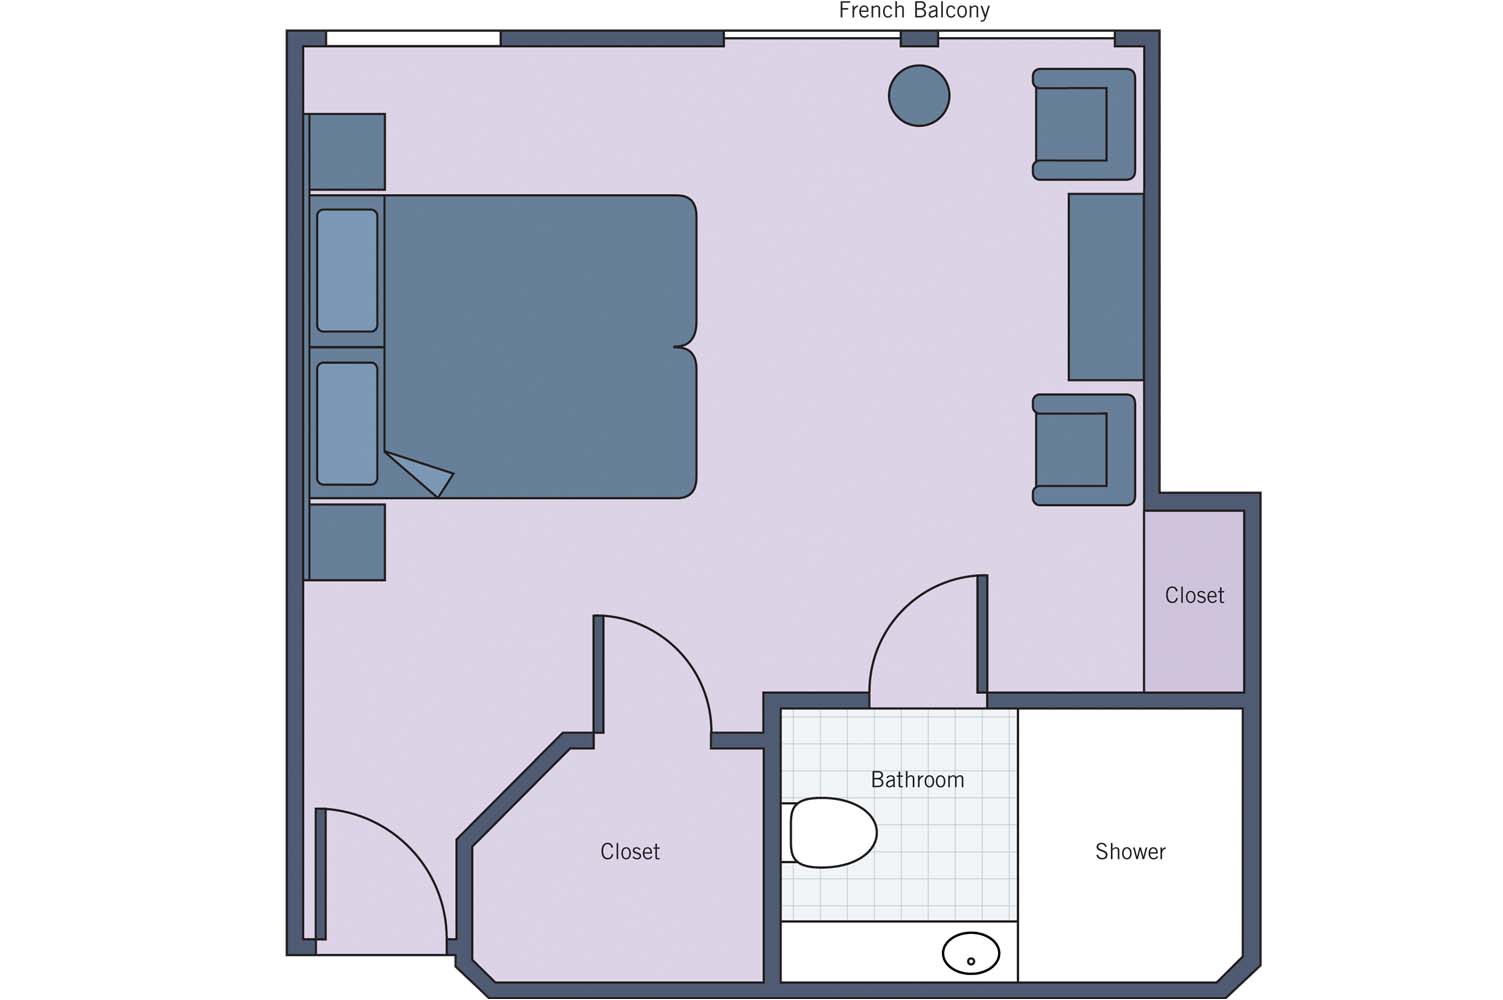 UNI River Princess suite floor plan